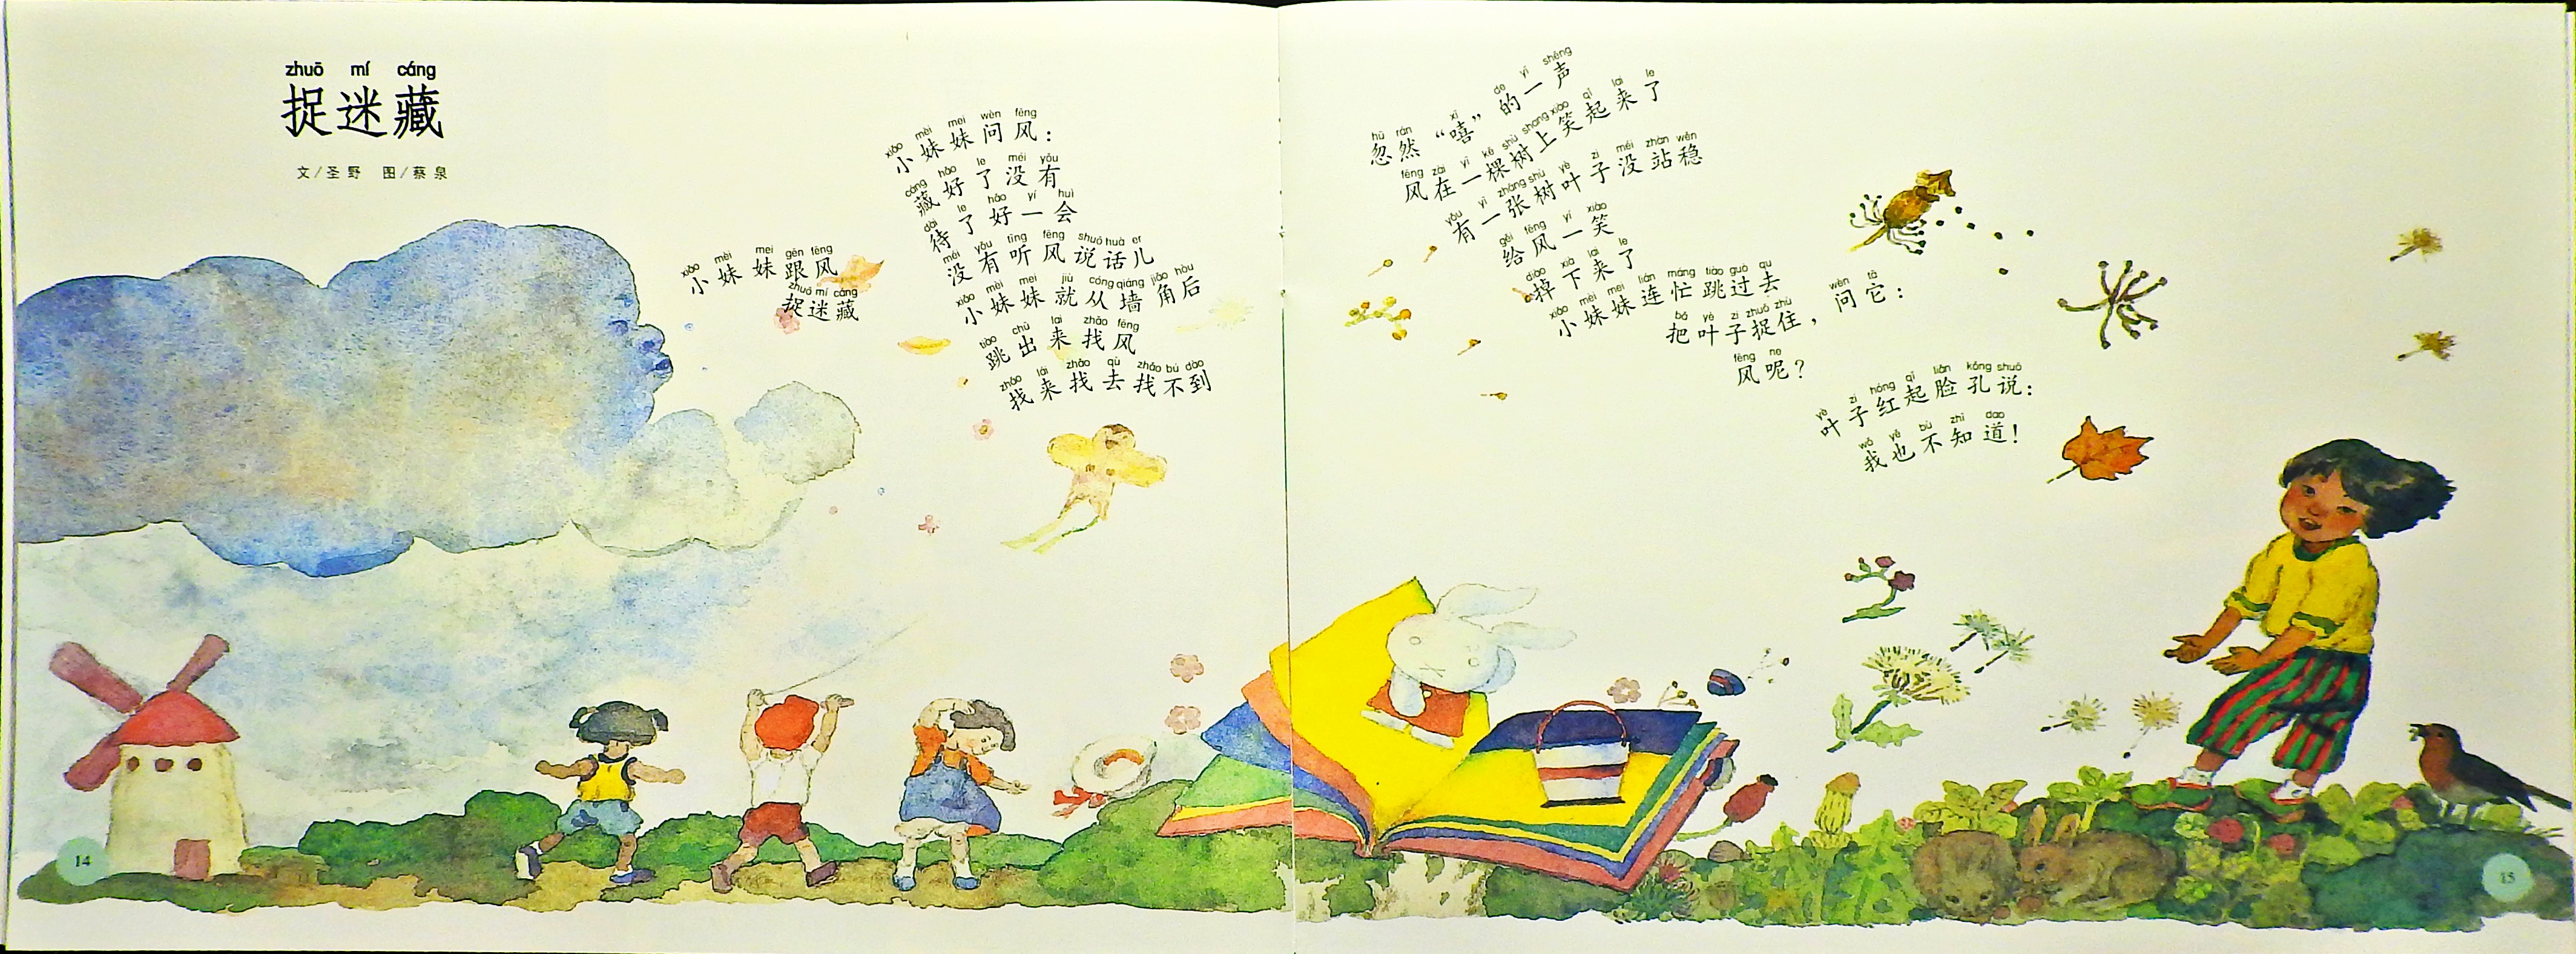 蝴蝶·豌豆花 (09),绘本,绘本故事,绘本阅读,故事书,童书,图画书,课外阅读